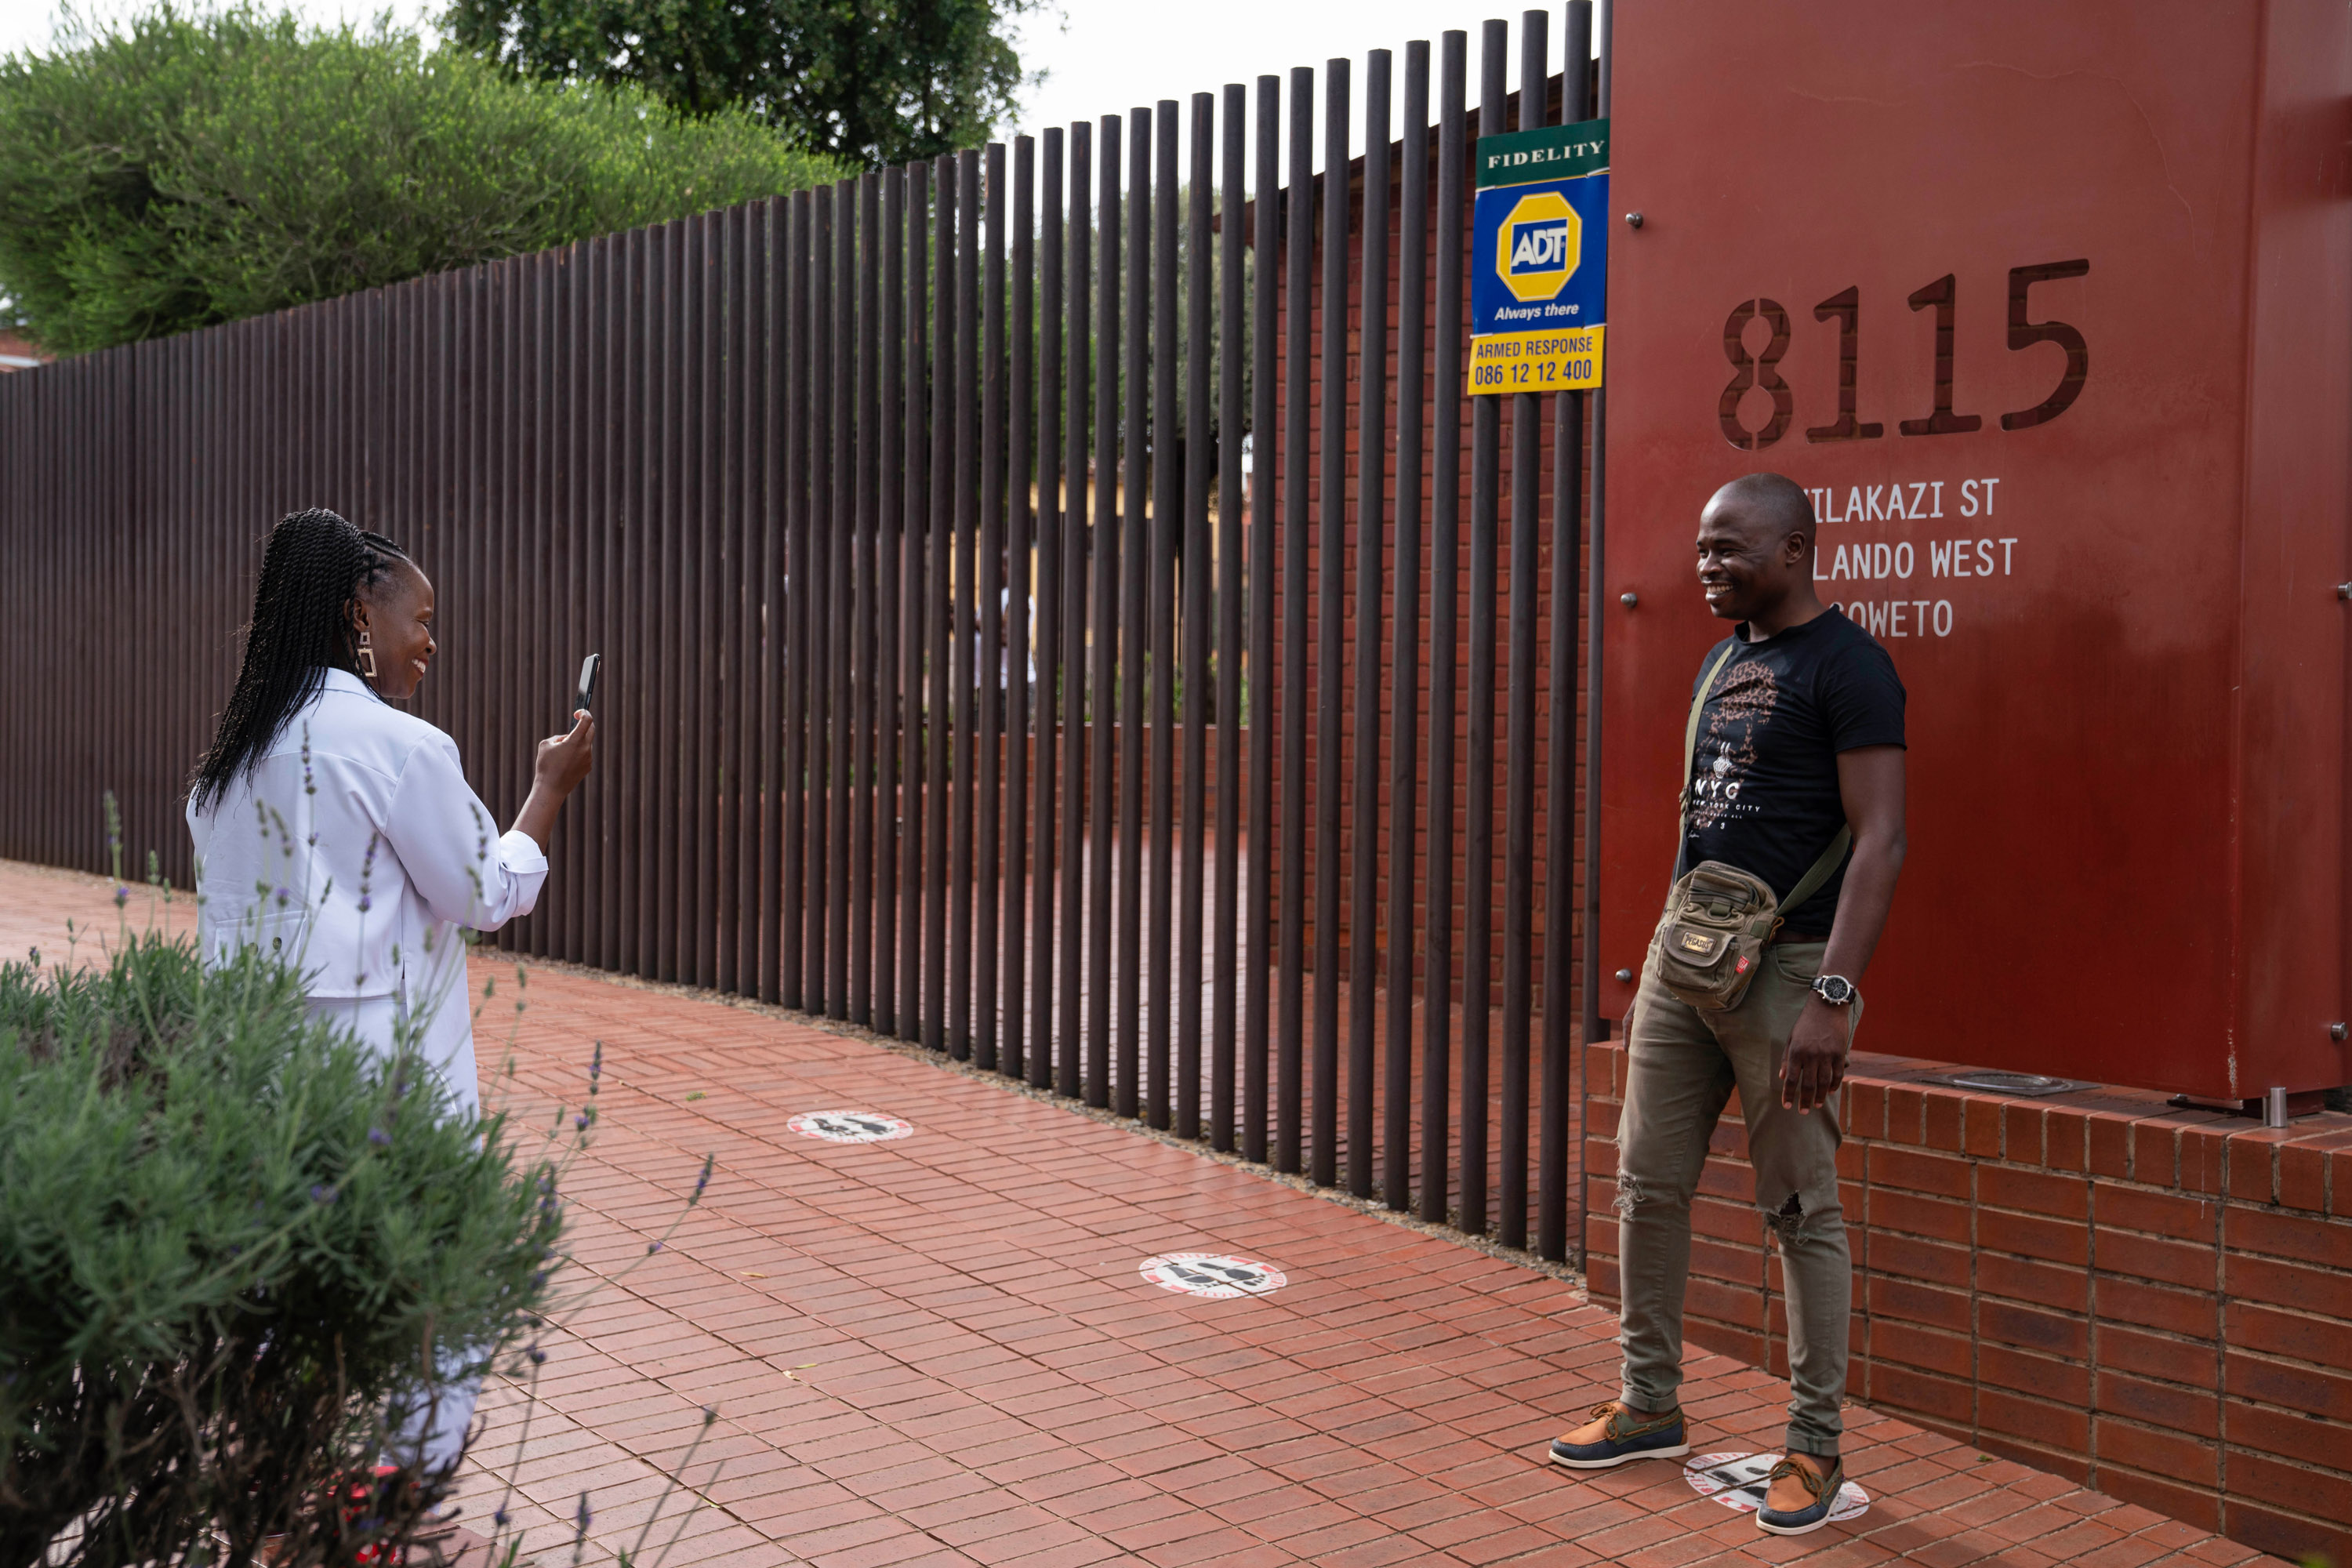 tourists take a photo outside gates of home